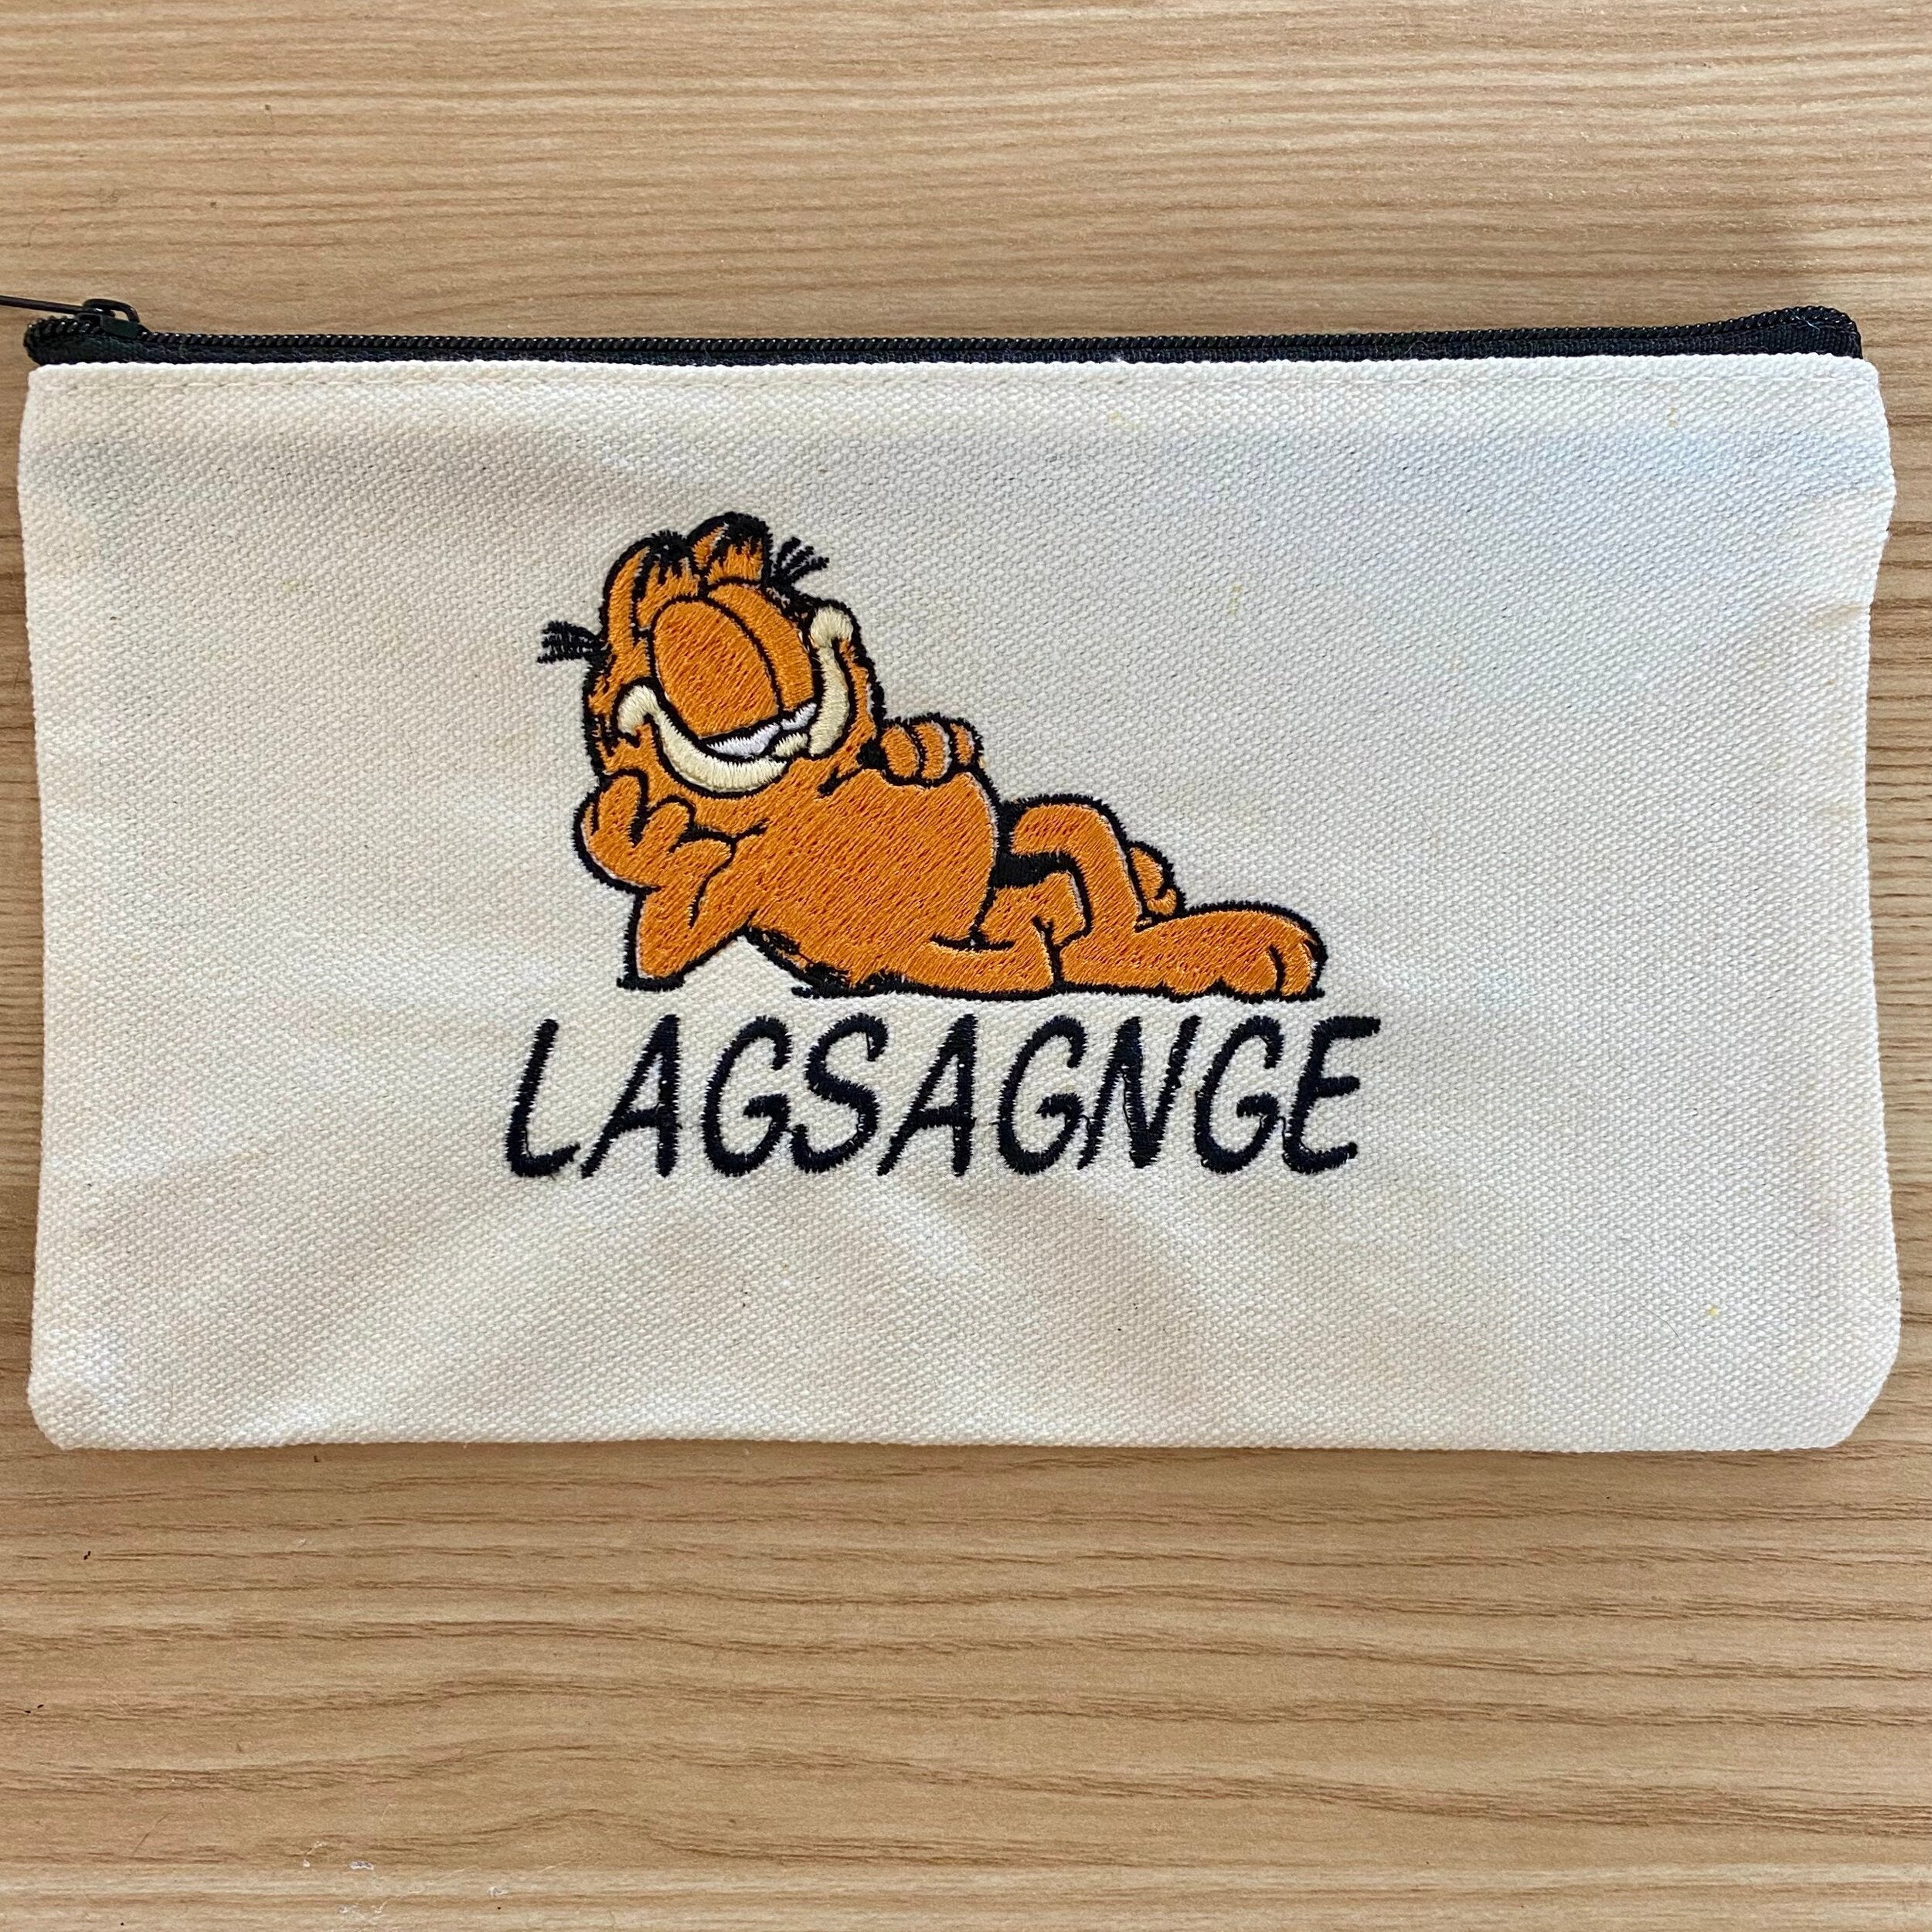 Garfield Lagsagnge Bag - IncredibleGood Inc